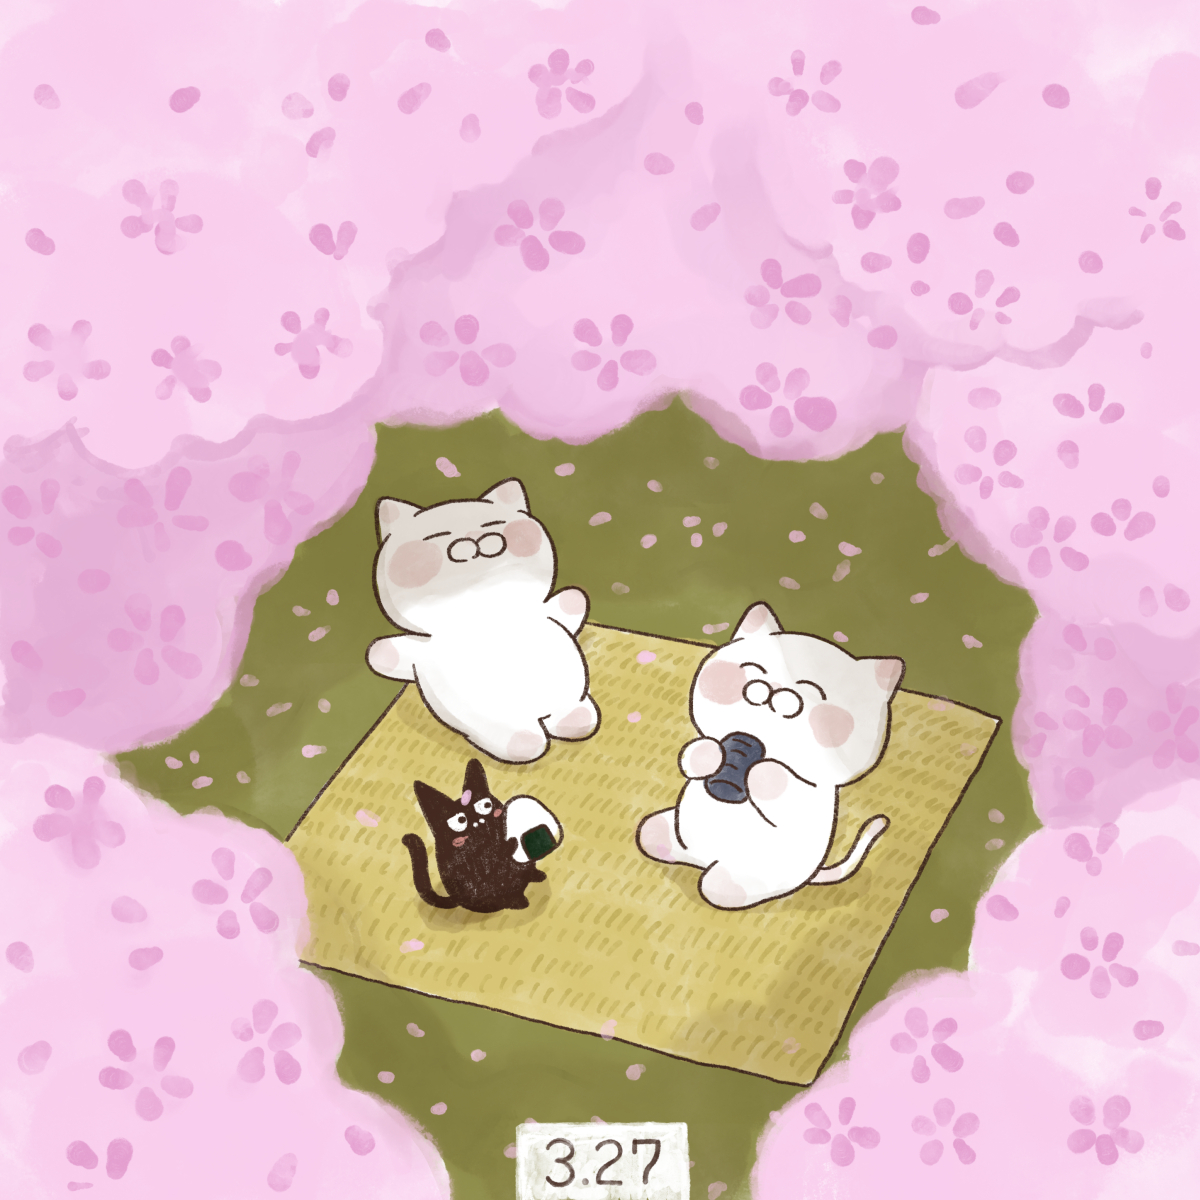 「3月27日【さくらの日】
日本さくらの会が1992年に制定しました。#桜の日 #」|大和猫のイラスト